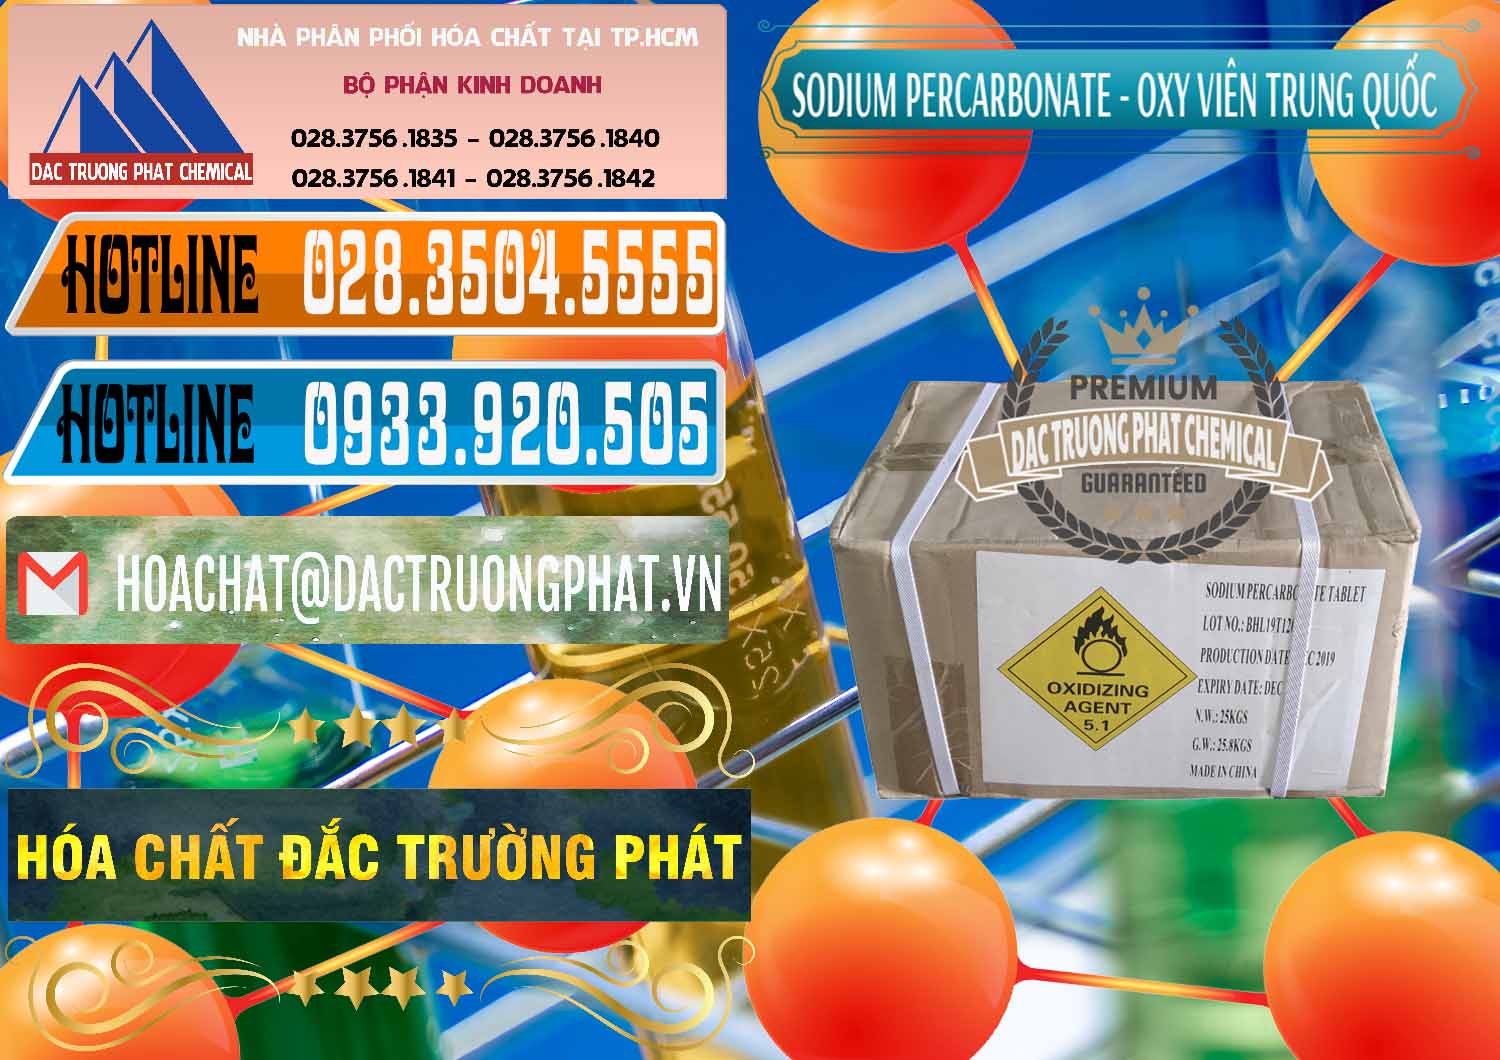 Cty chuyên cung cấp & bán Sodium Percarbonate - Oxy Dạng Viên Trung Quốc China - 0329 - Chuyên kinh doanh _ cung cấp hóa chất tại TP.HCM - stmp.net